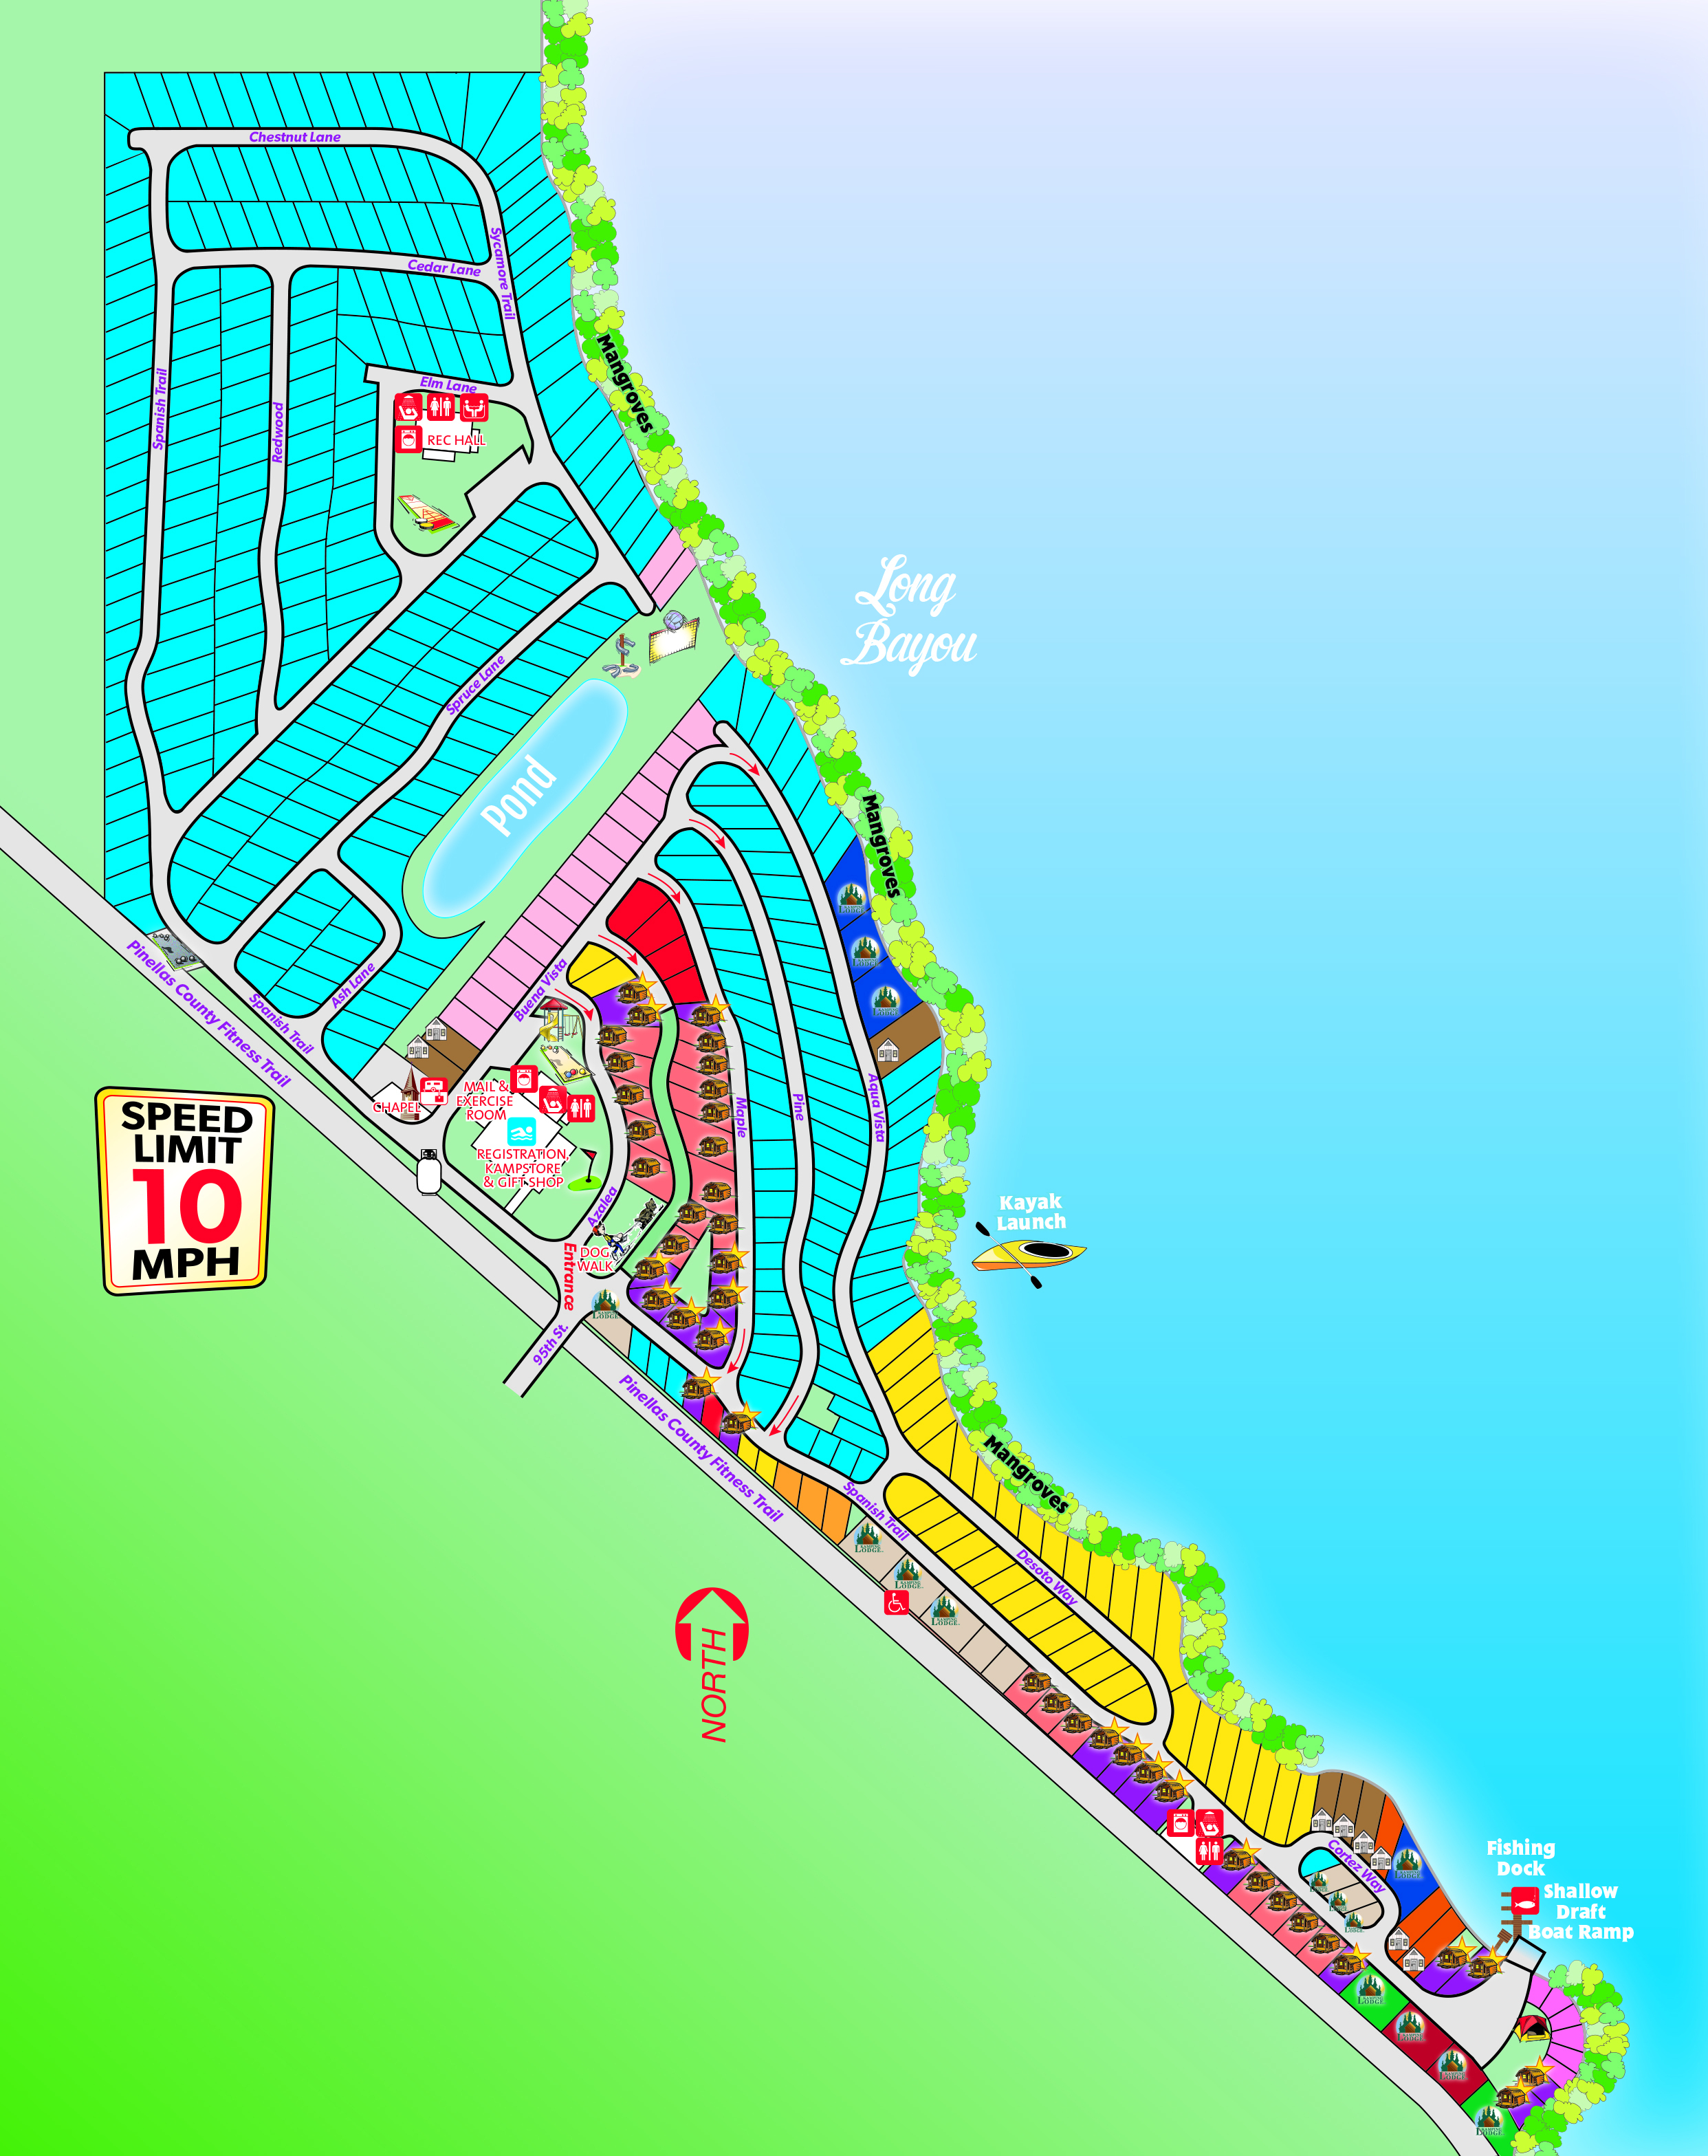 St. Petersburg, Florida Campground | St. Petersburg / Madeira Beach Koa - Map Of Koa Campgrounds In Florida